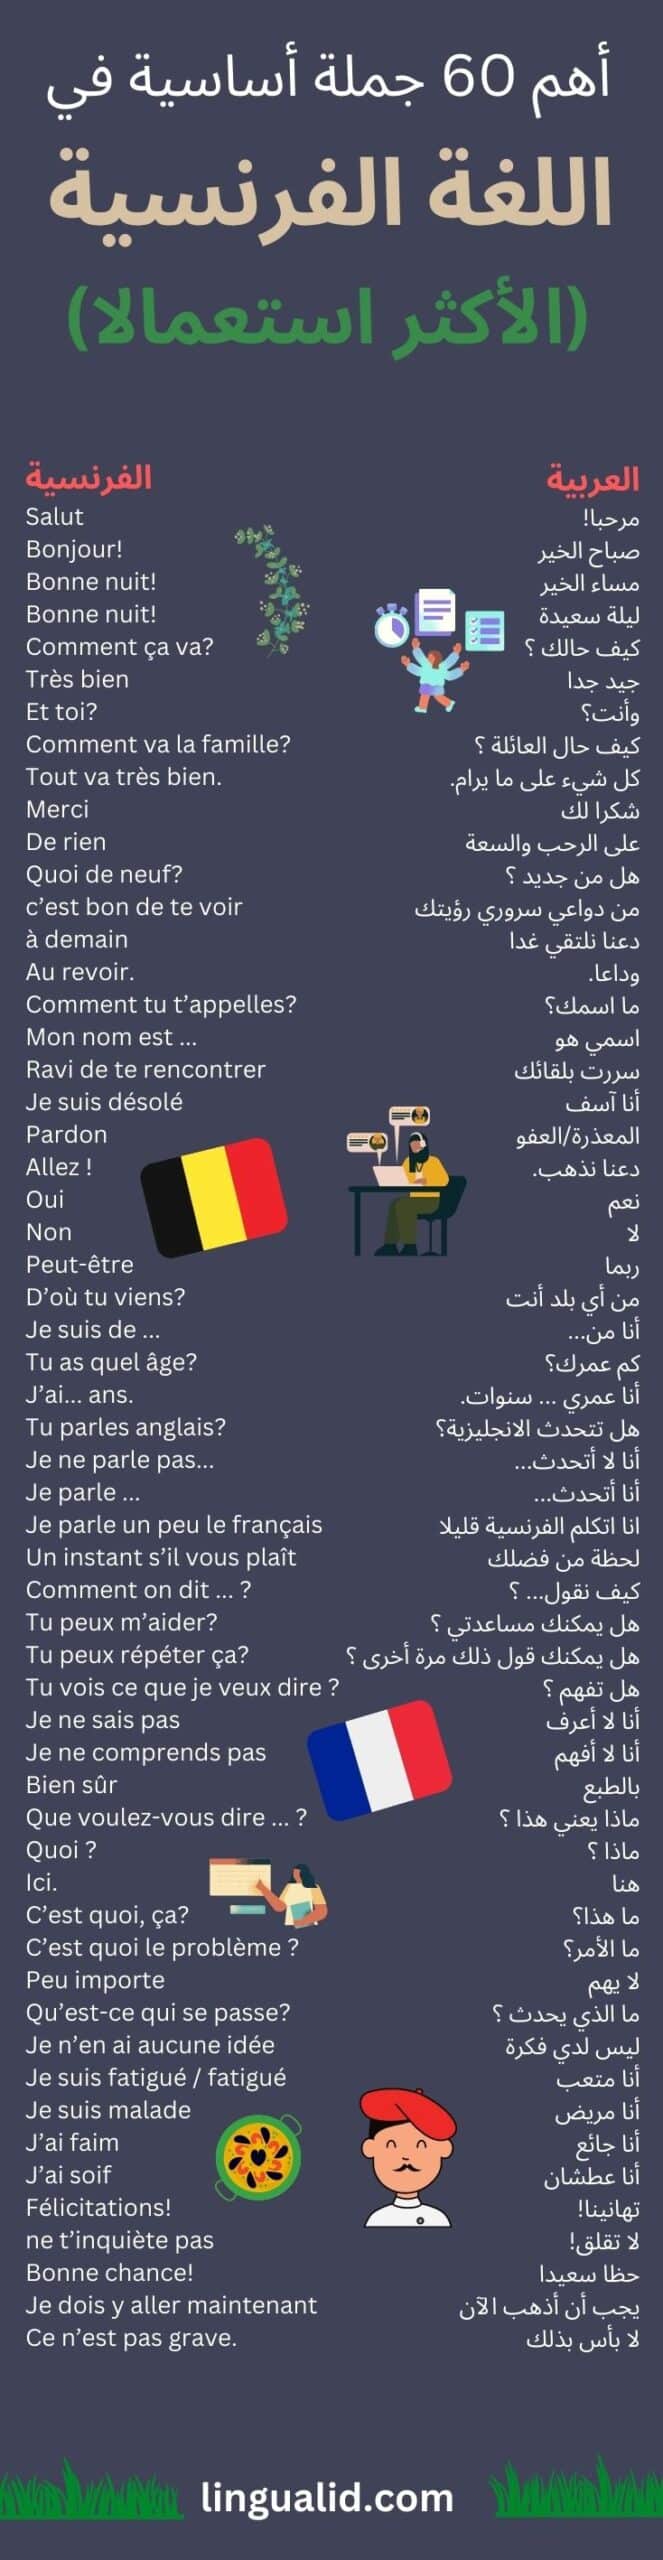 أهم 60 جملة في اللغة الفرنسية مع الترجمة العربية